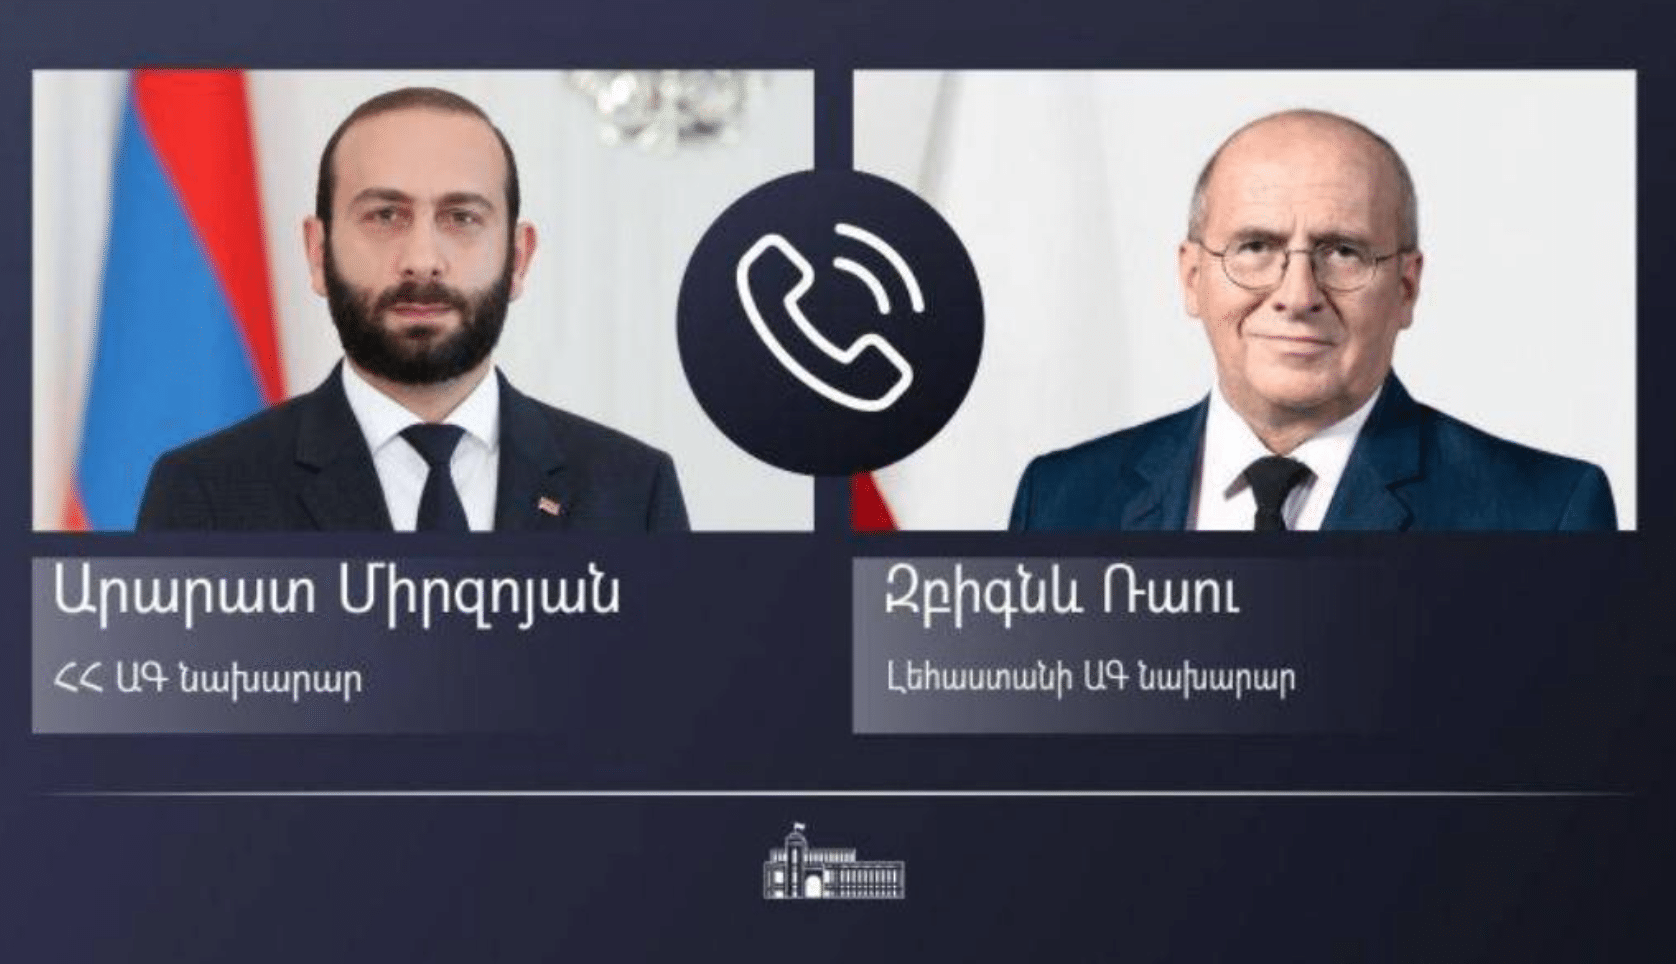 Հայաստանի և Լեհաստանի ԱԳ նախարարները հեռախոսազրույց են ունեցել